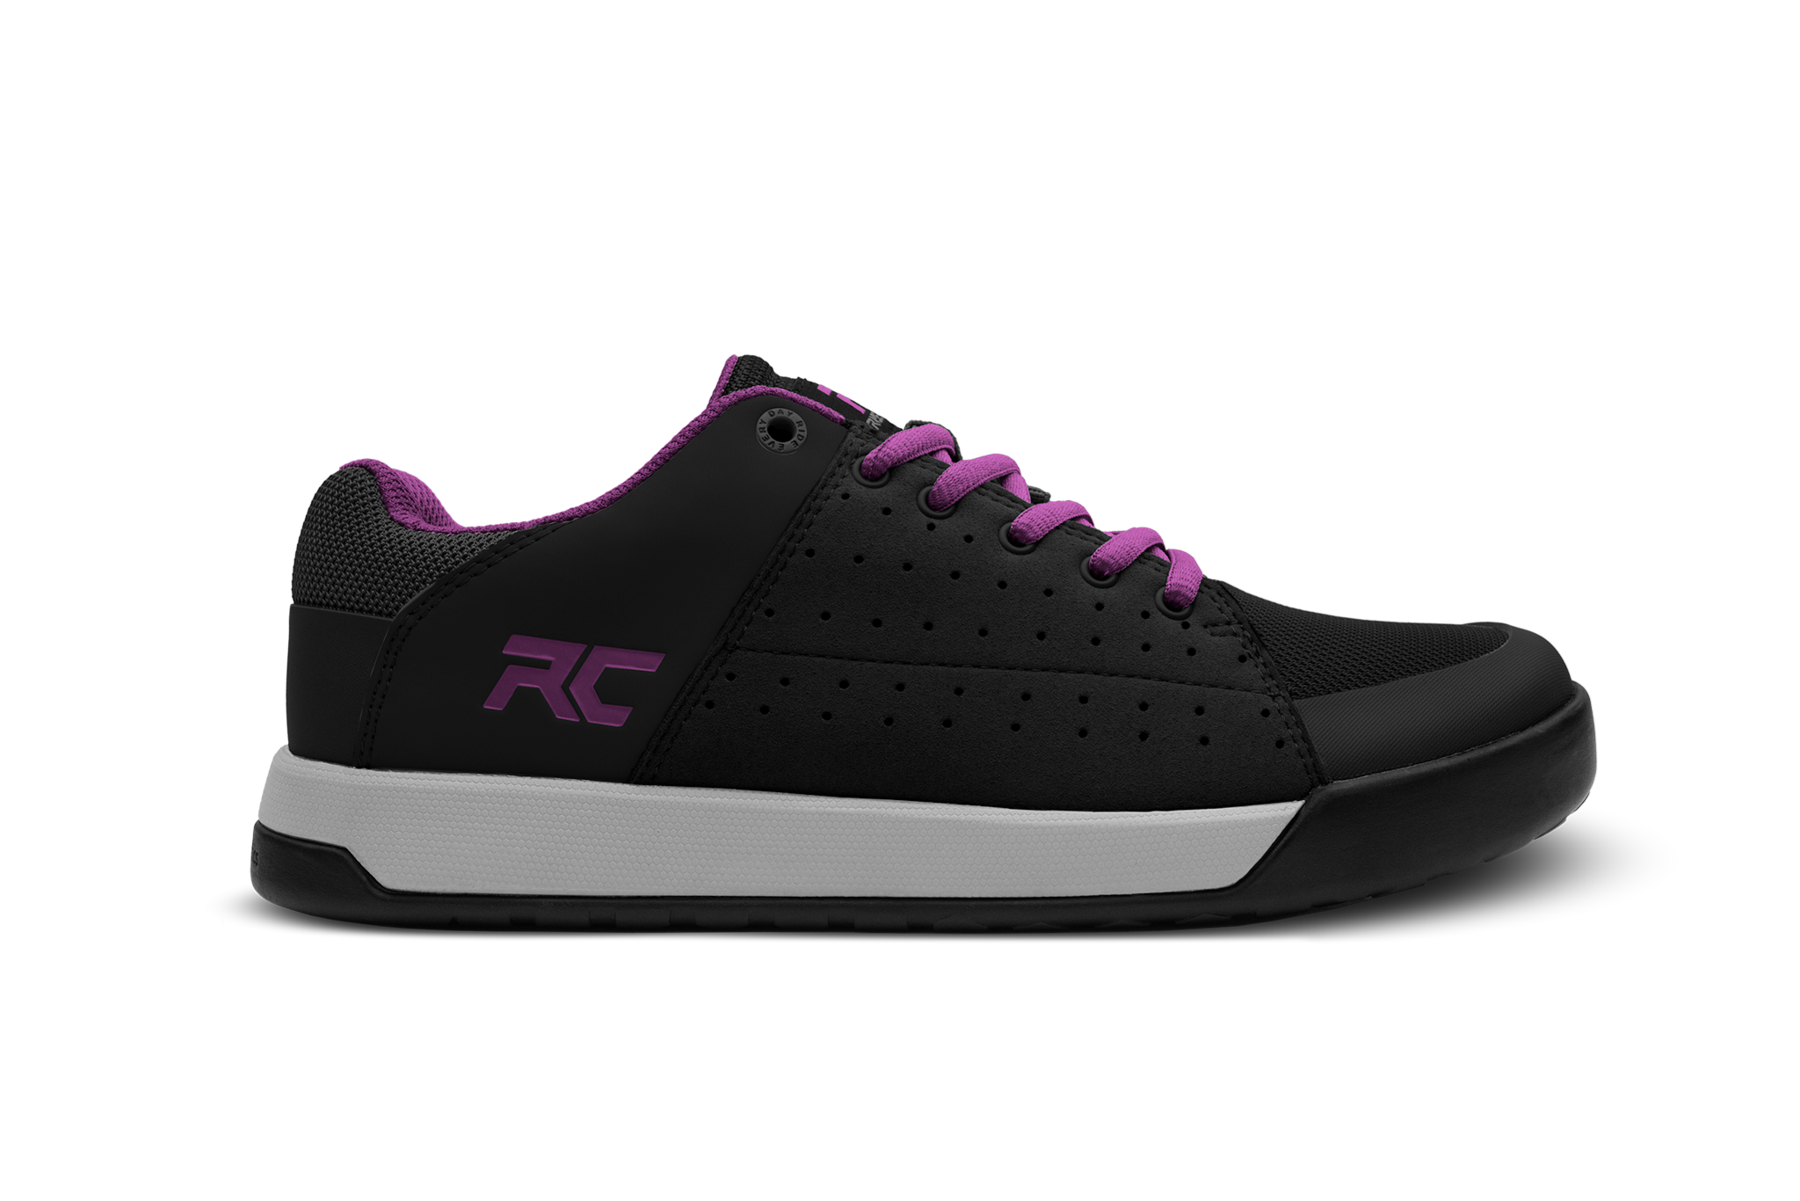 Ride Concepts Livewire Black/Purple MTB Shoes